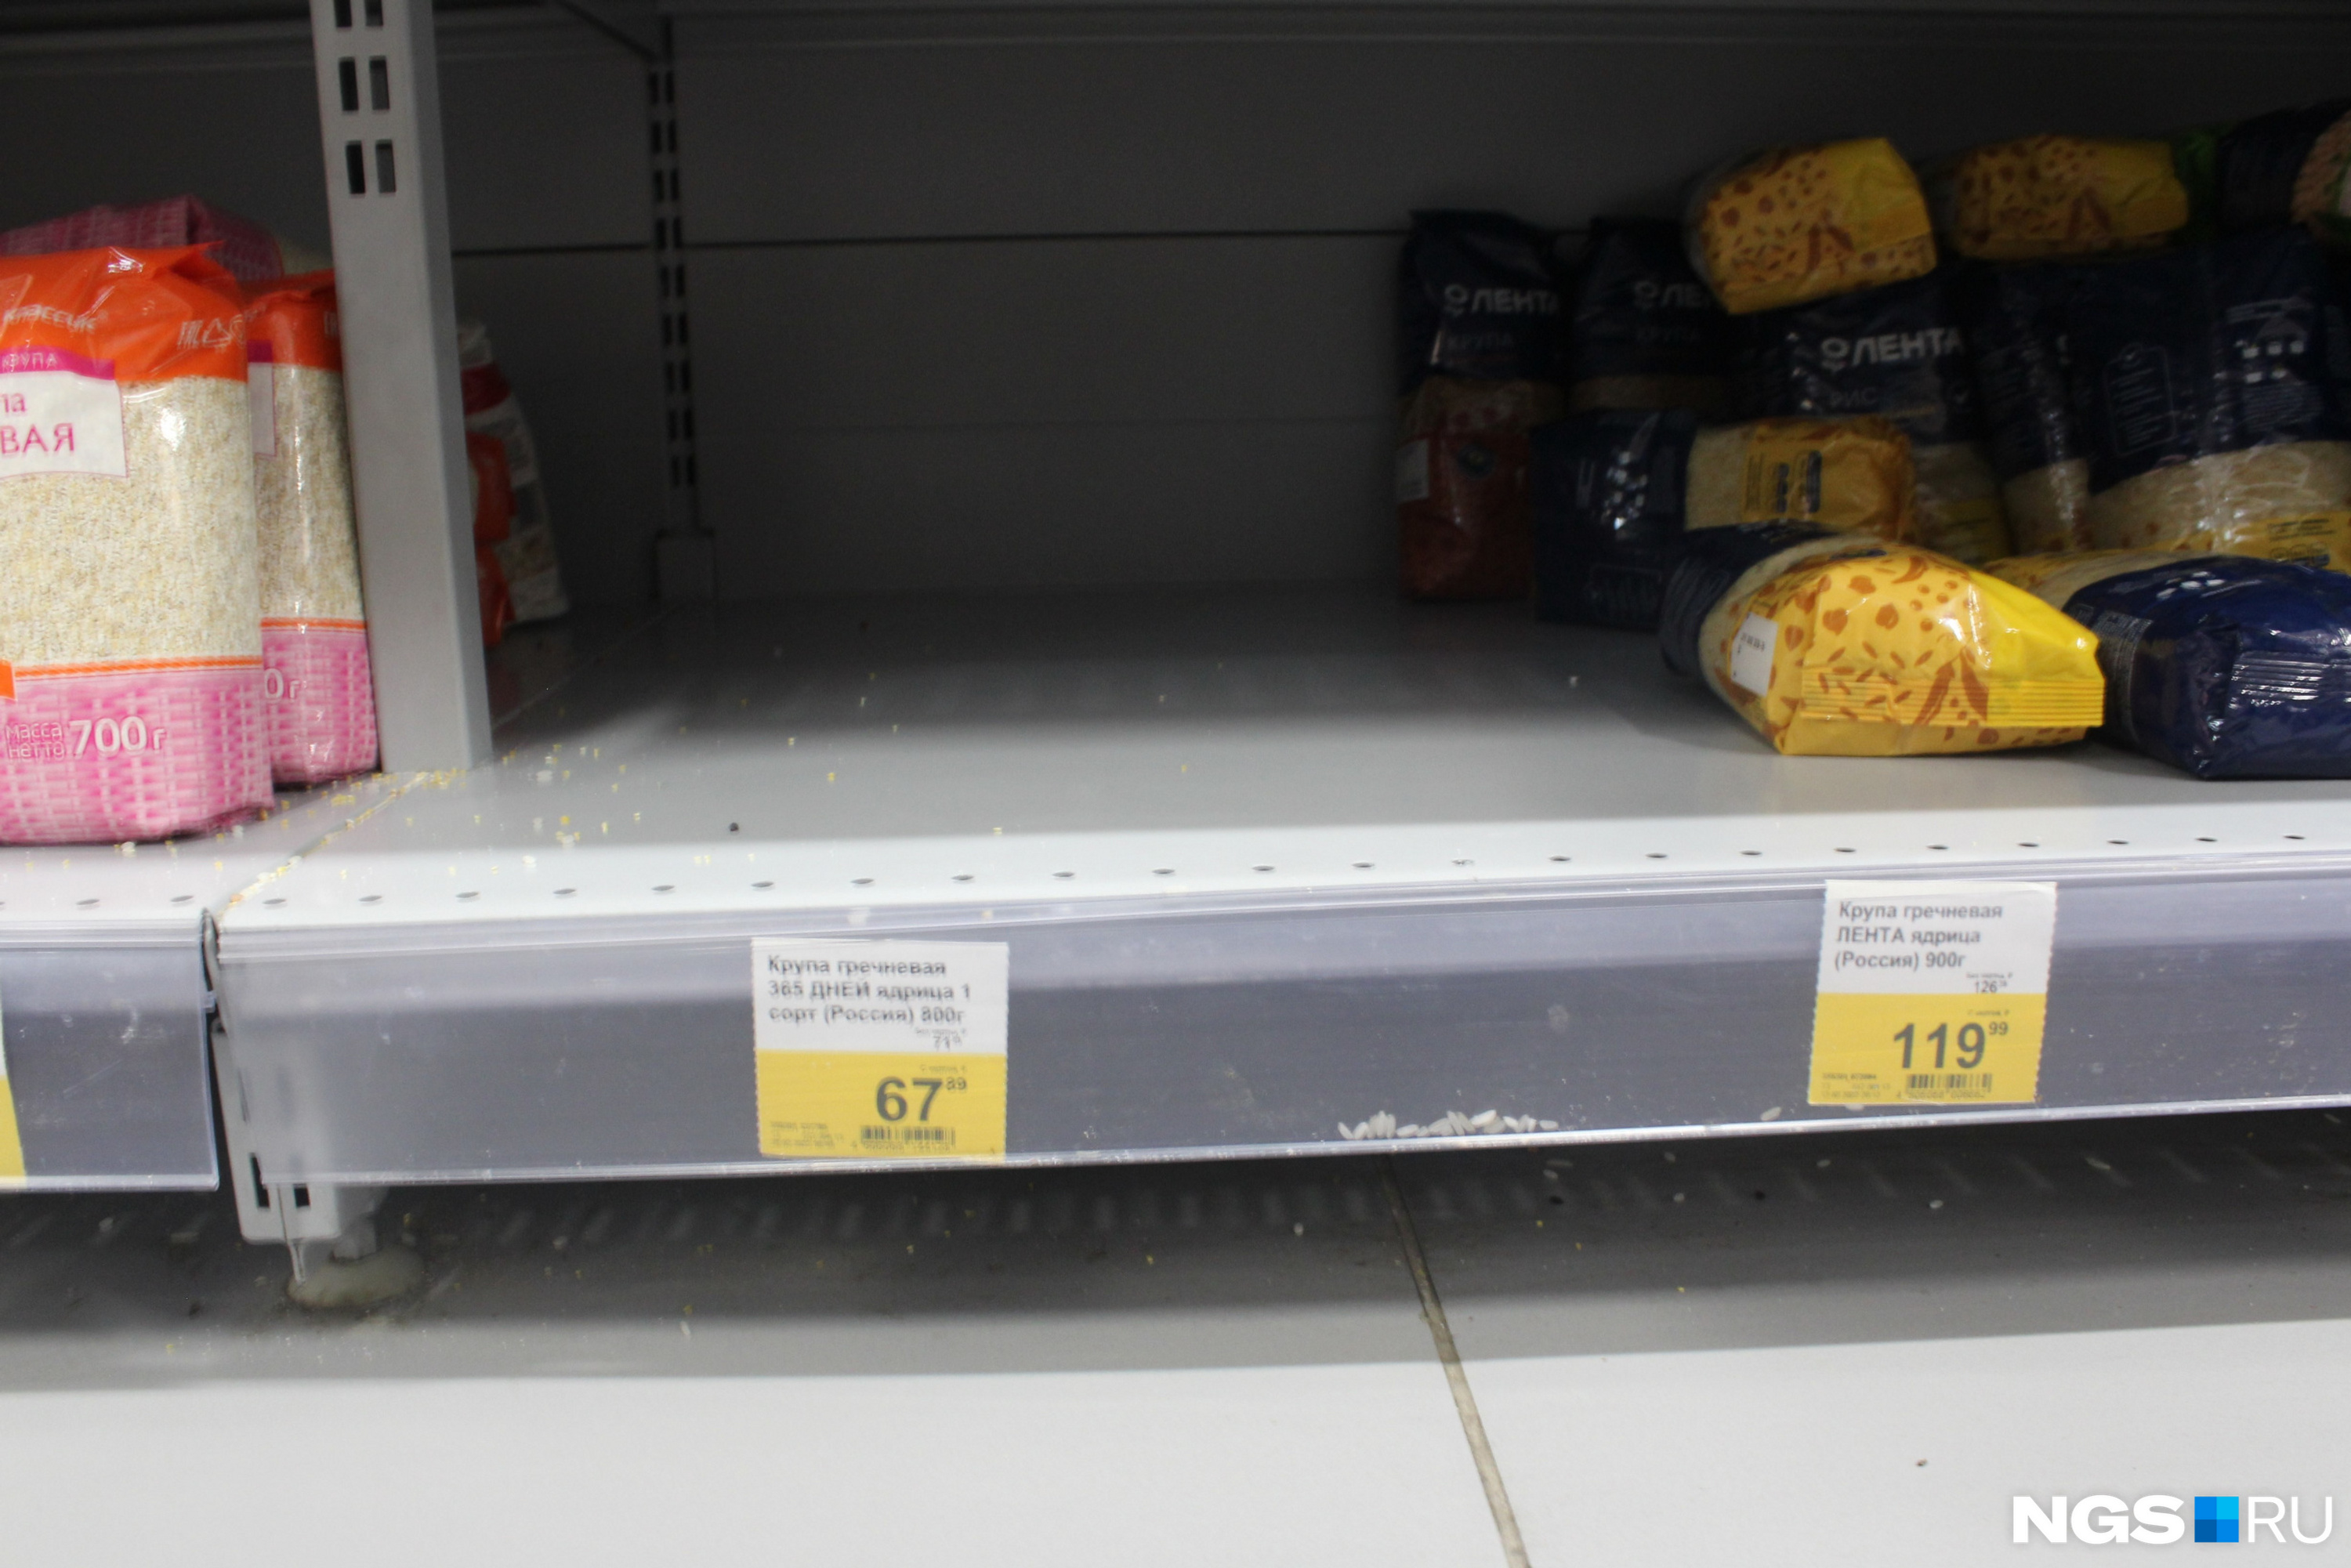 Товары нижней цены в гипермаркете «Лента» явно пользуются повышенным спросом